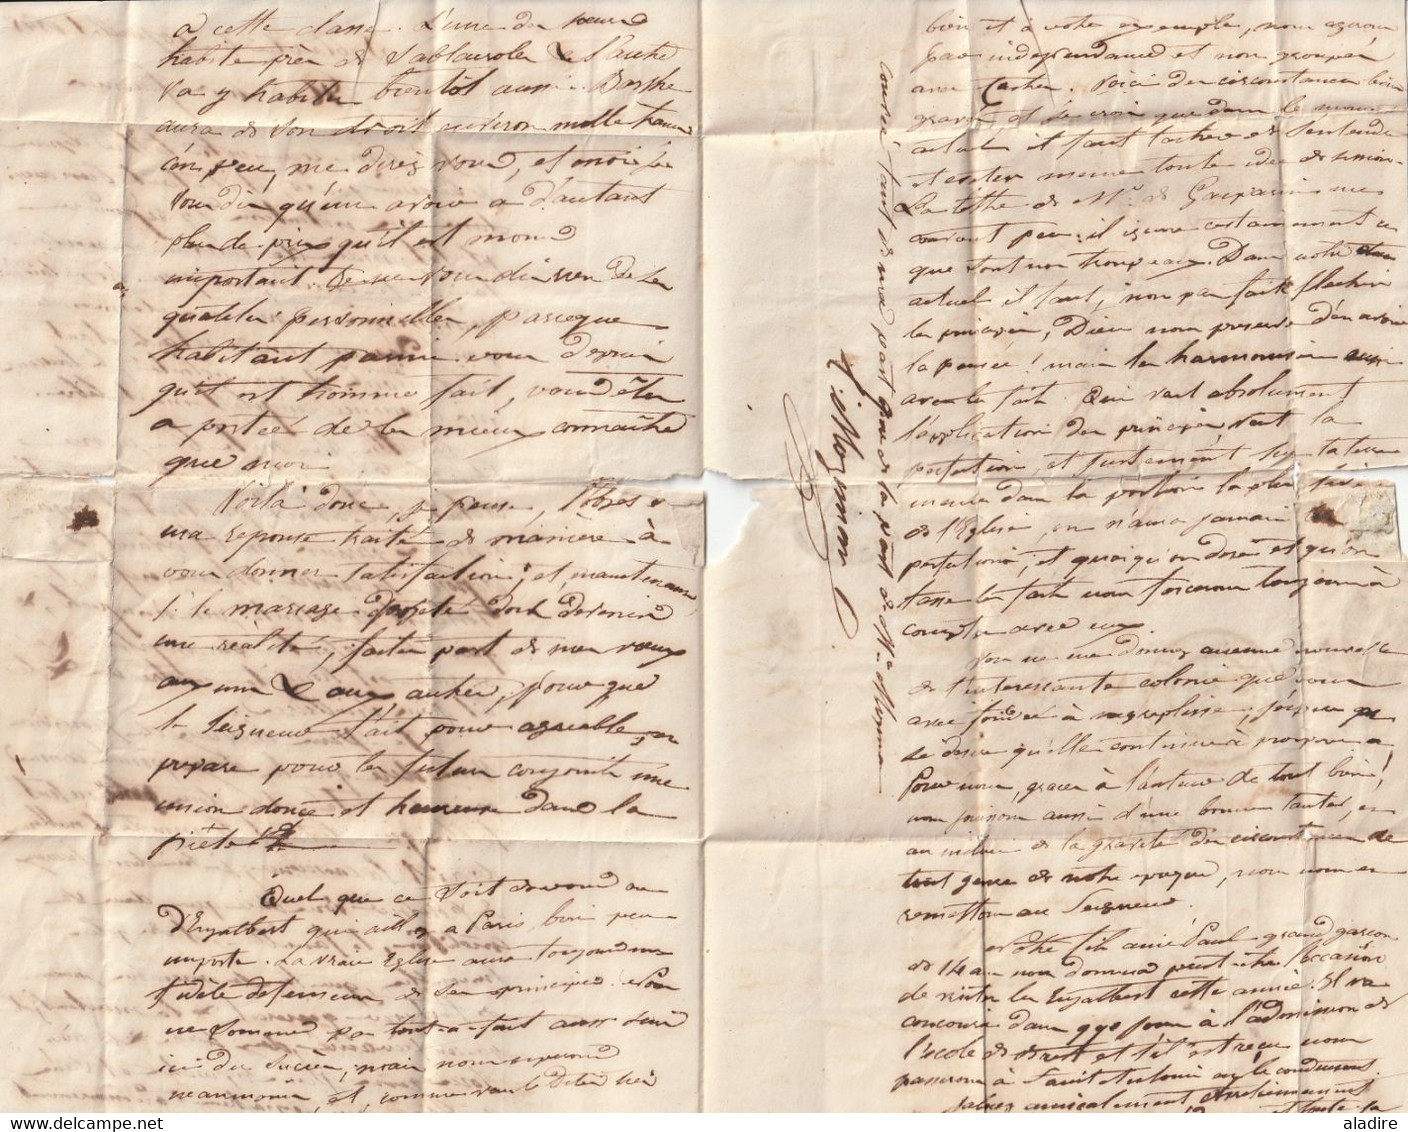 1848 - Lettre pliée avec corresp de 3 pages de SABLAYROLLES, postée à BRASSAC sur l'Agout, Tarn vers Nègrepelisse